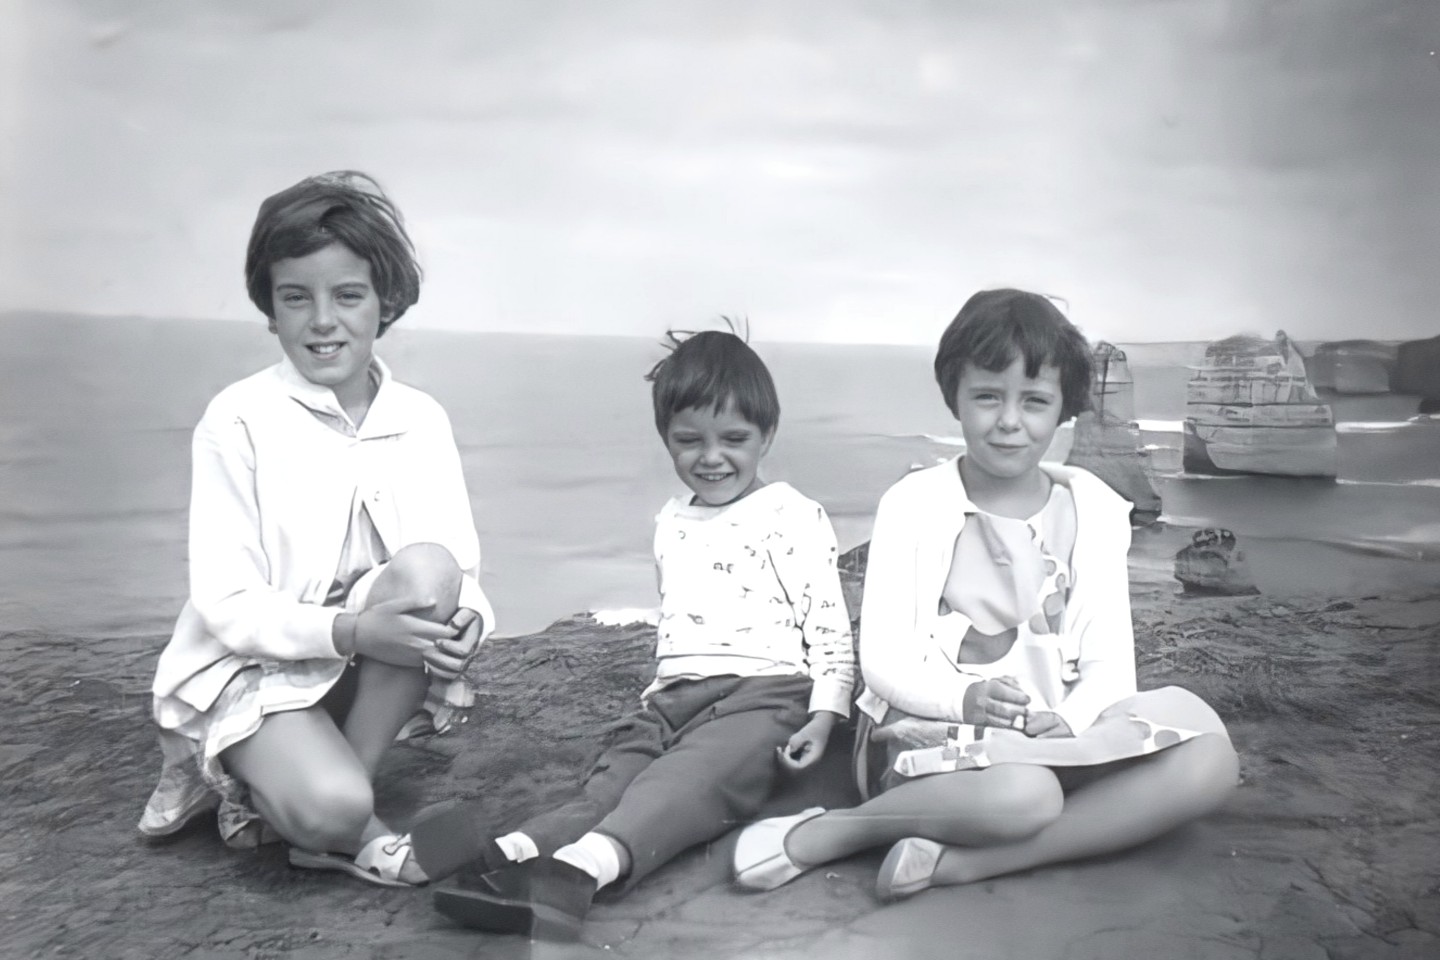 Jane, Grant et Arnna Beaumont, photographiées lors d'un voyage en famille aux Douze Apôtres en 1965 près de Port Campbell, Victoria, Australie.